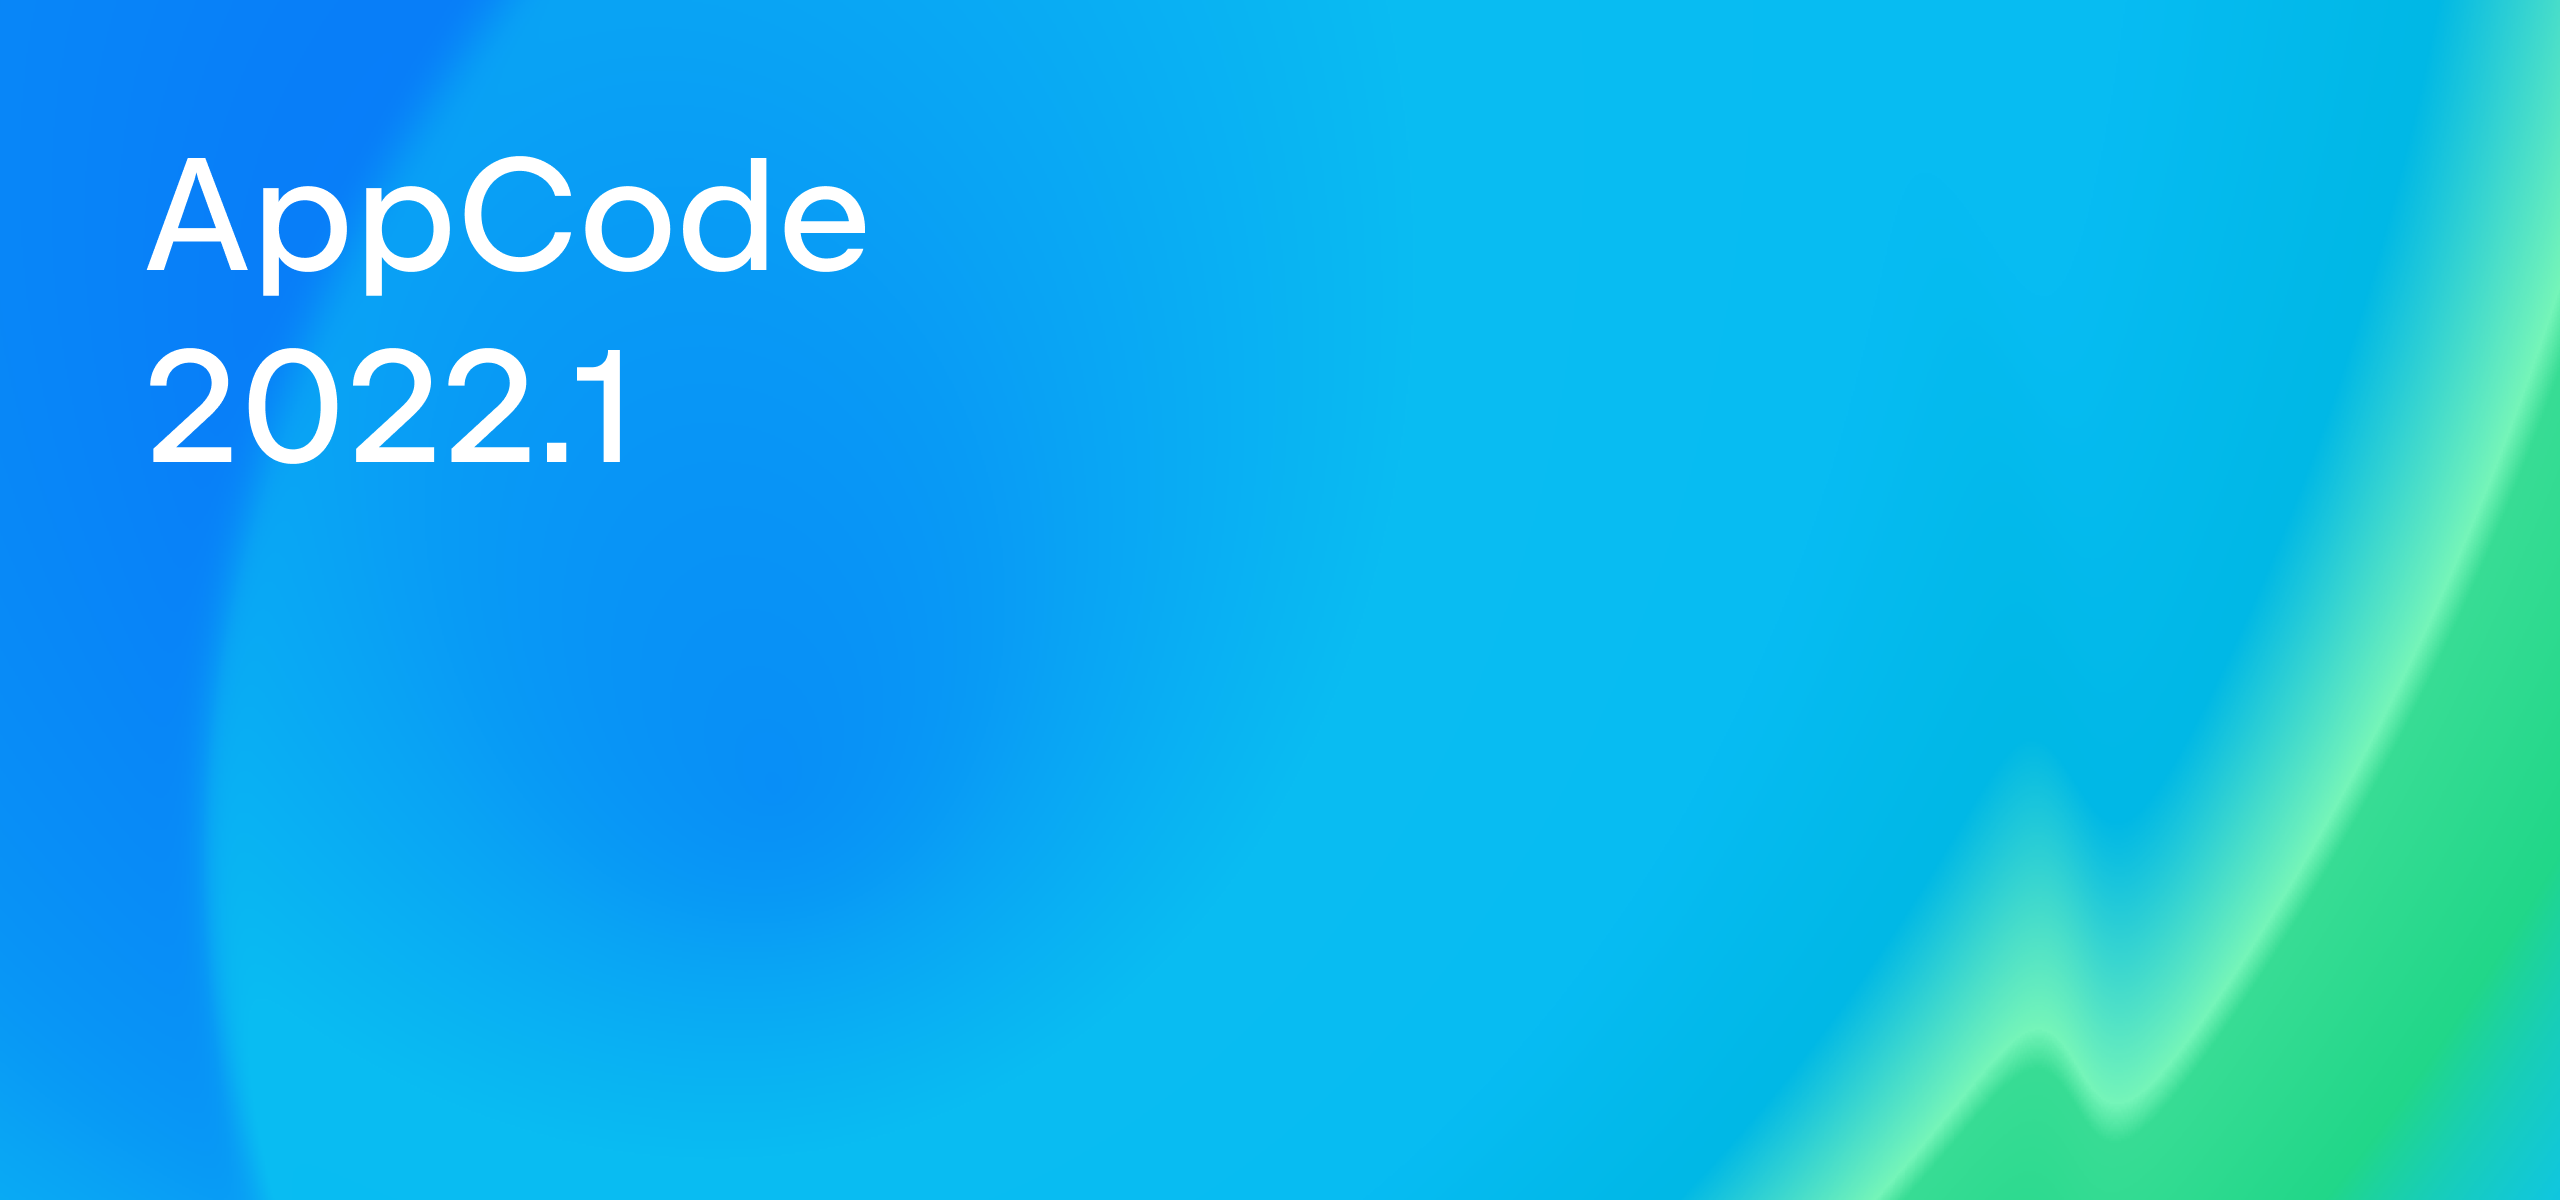 AppCode 2022.1 released